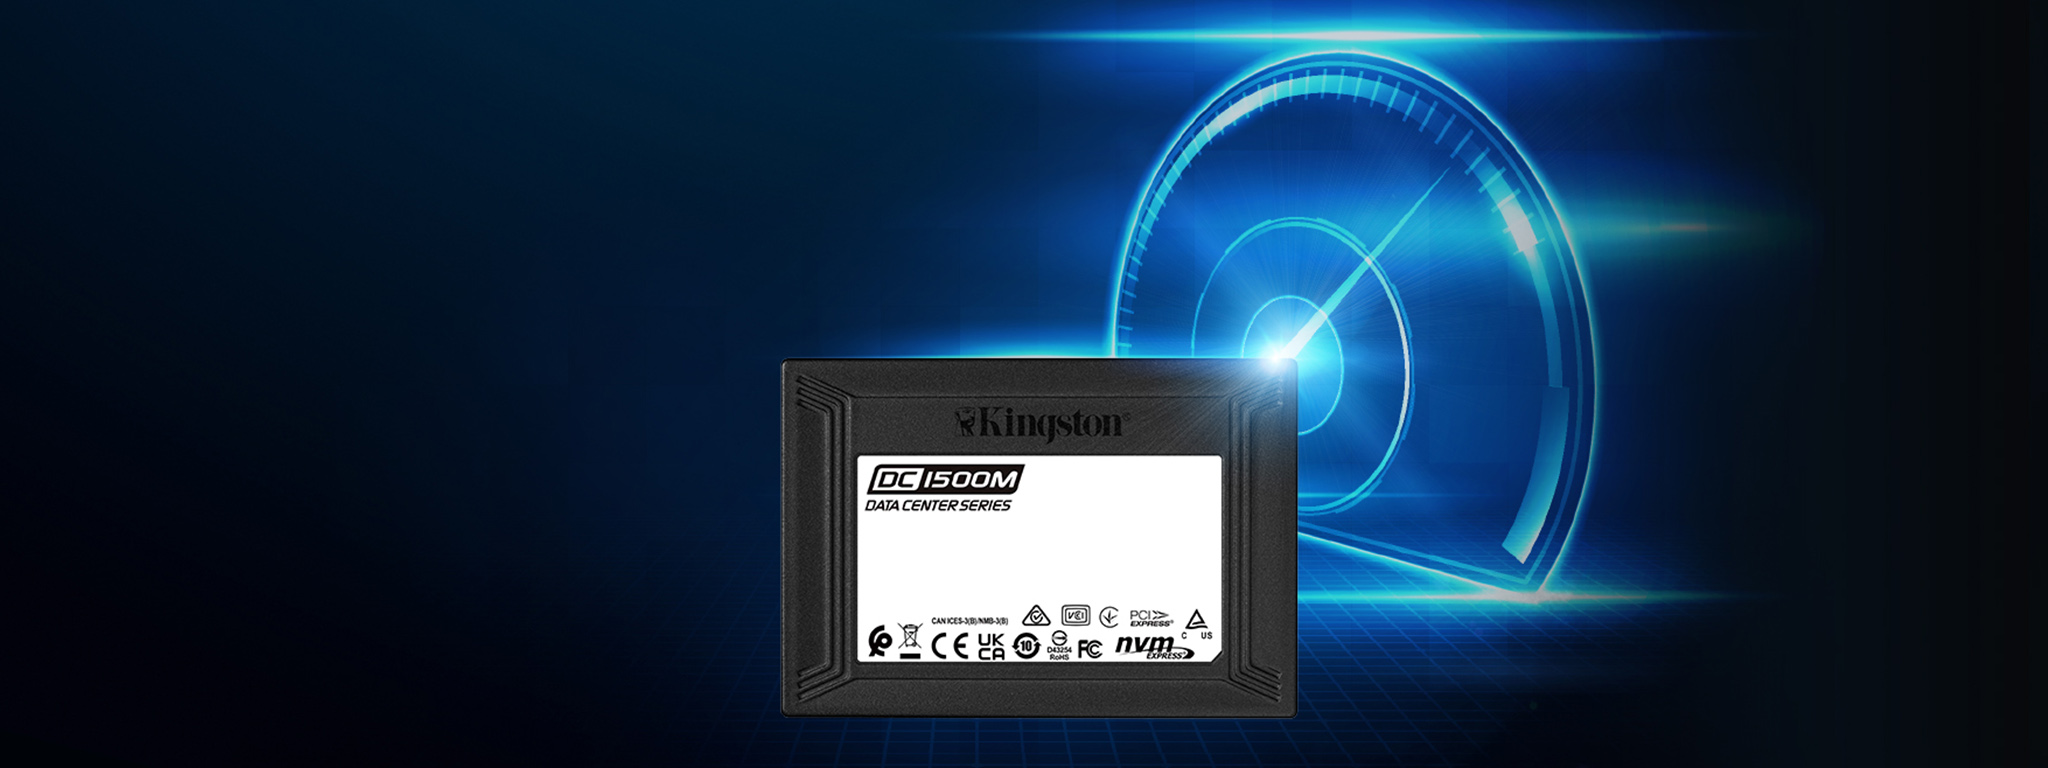 企业级 DC1500M 固态硬盘和前面包含一个包含代表高速度的发光蓝色速度计的图形